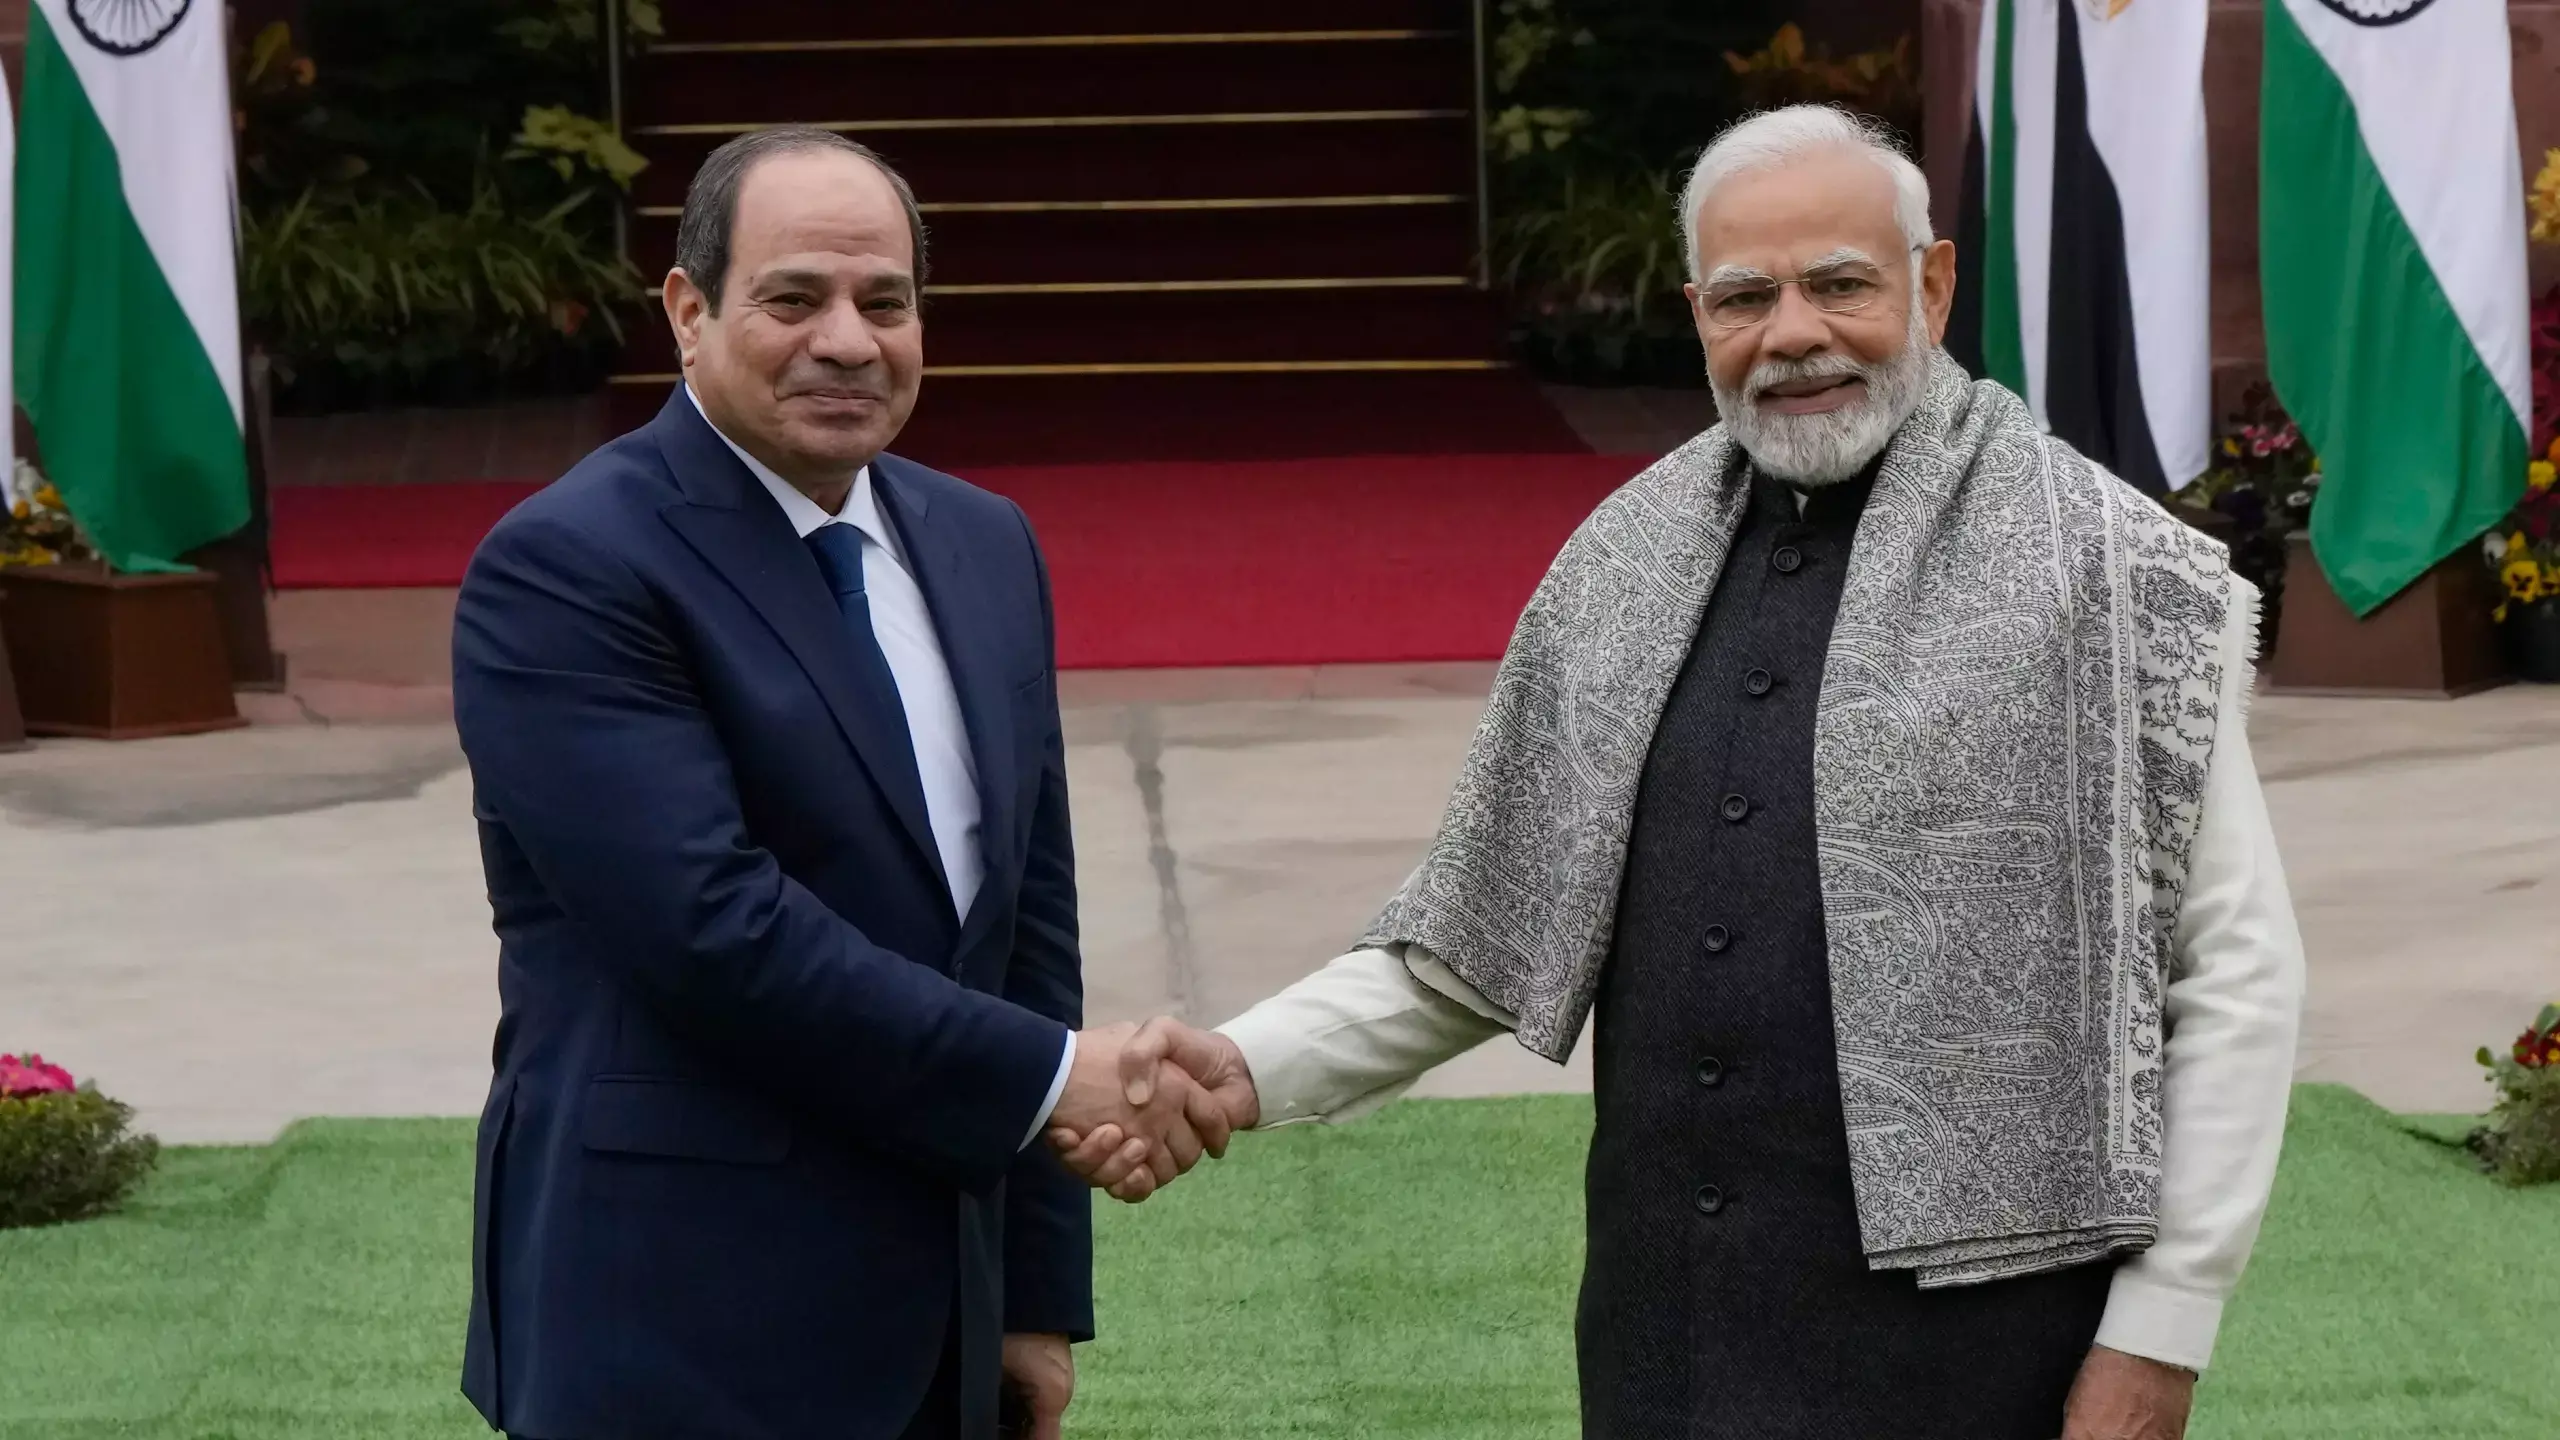 PM Modi and Egyptian President Sisi call for zero tolerance towards terrorism